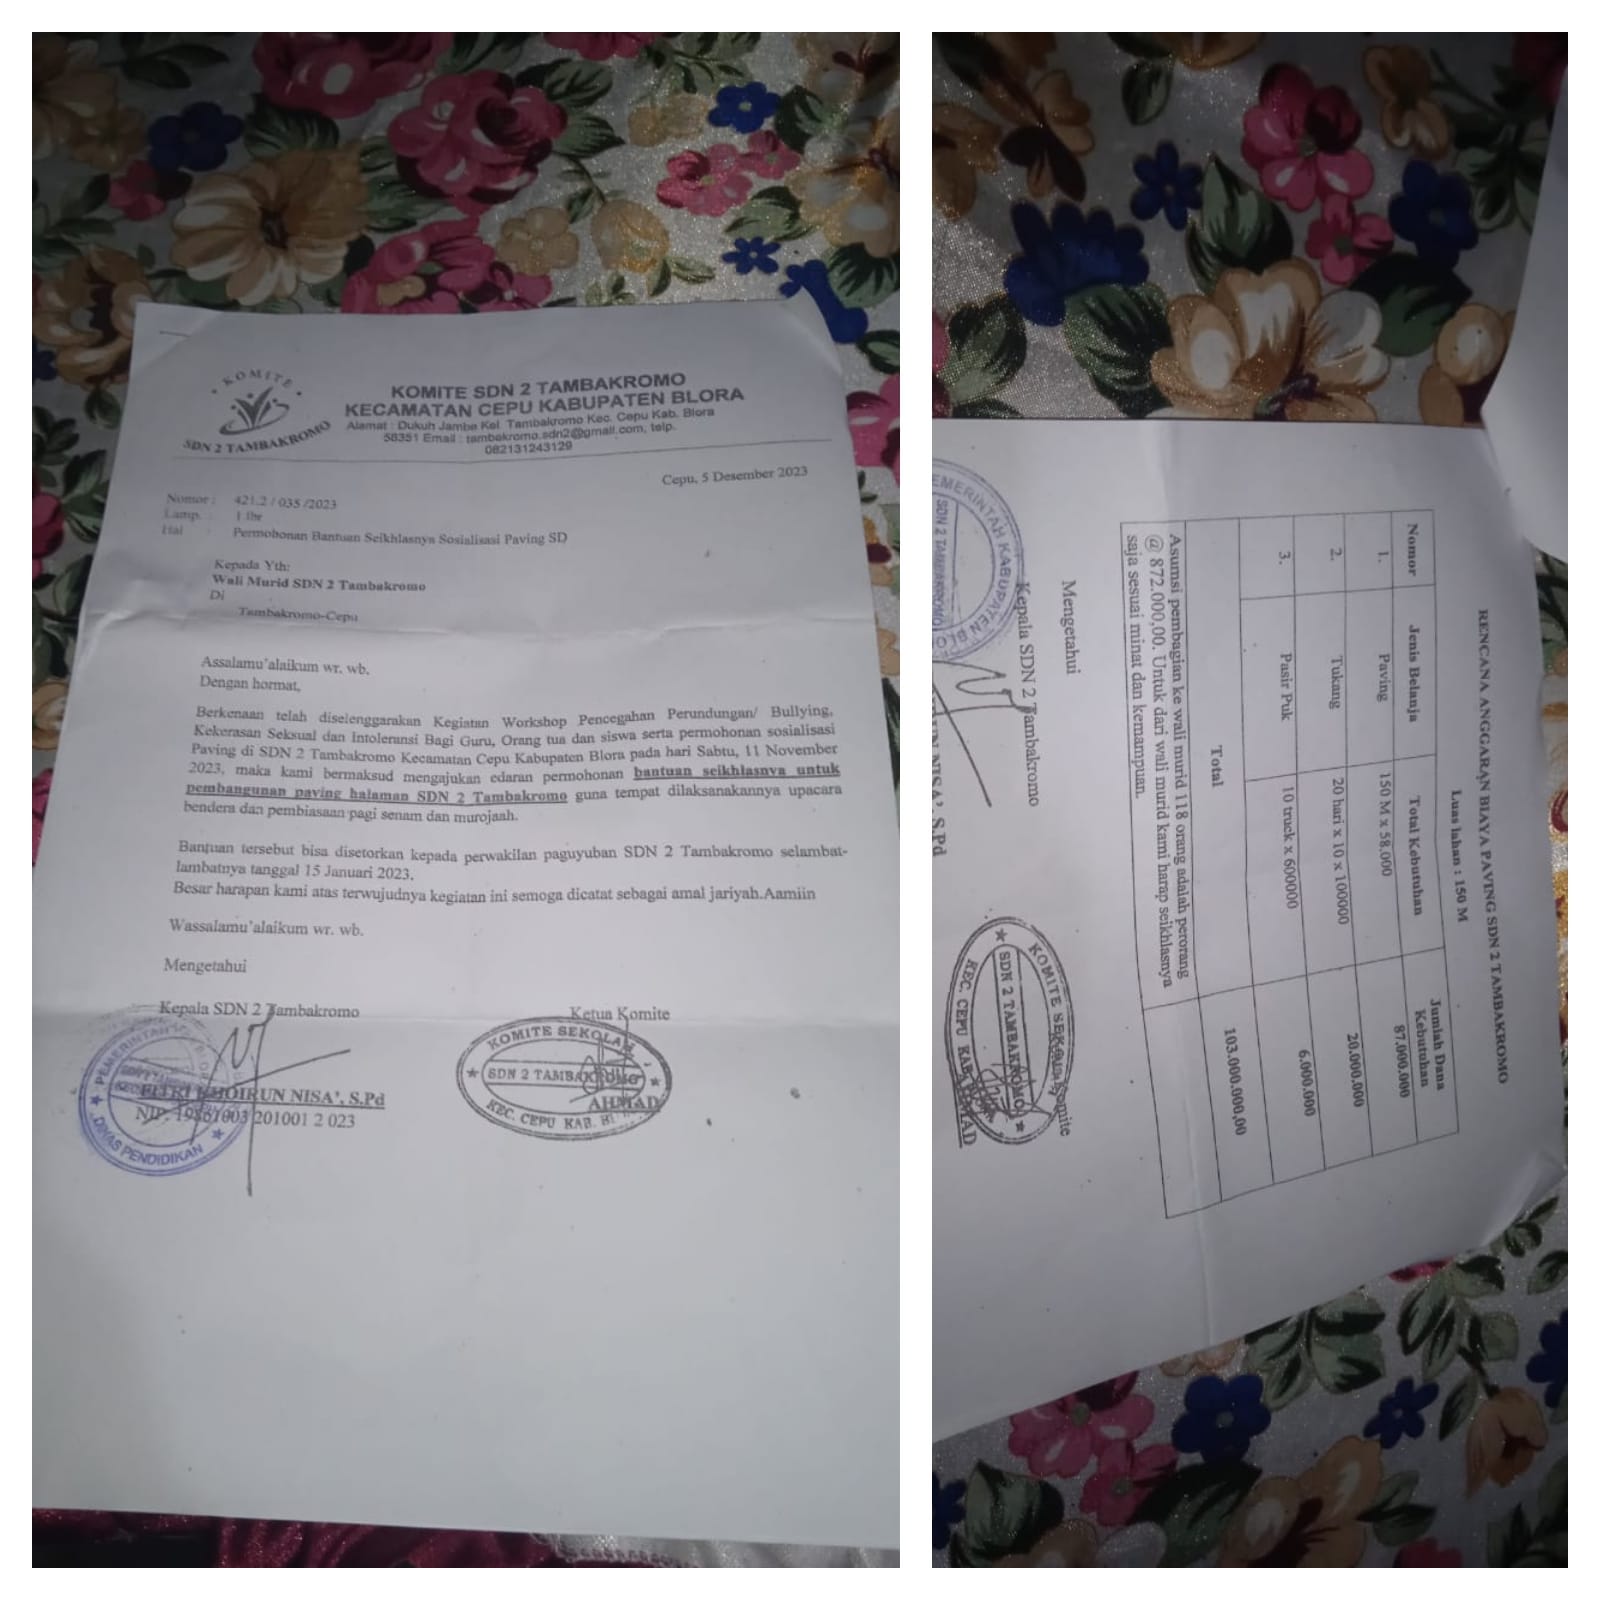 SDN 2 Tambakromo Cepu Pungut Iuran dari Wali Murid, Ini Kata Anggota Dewan!